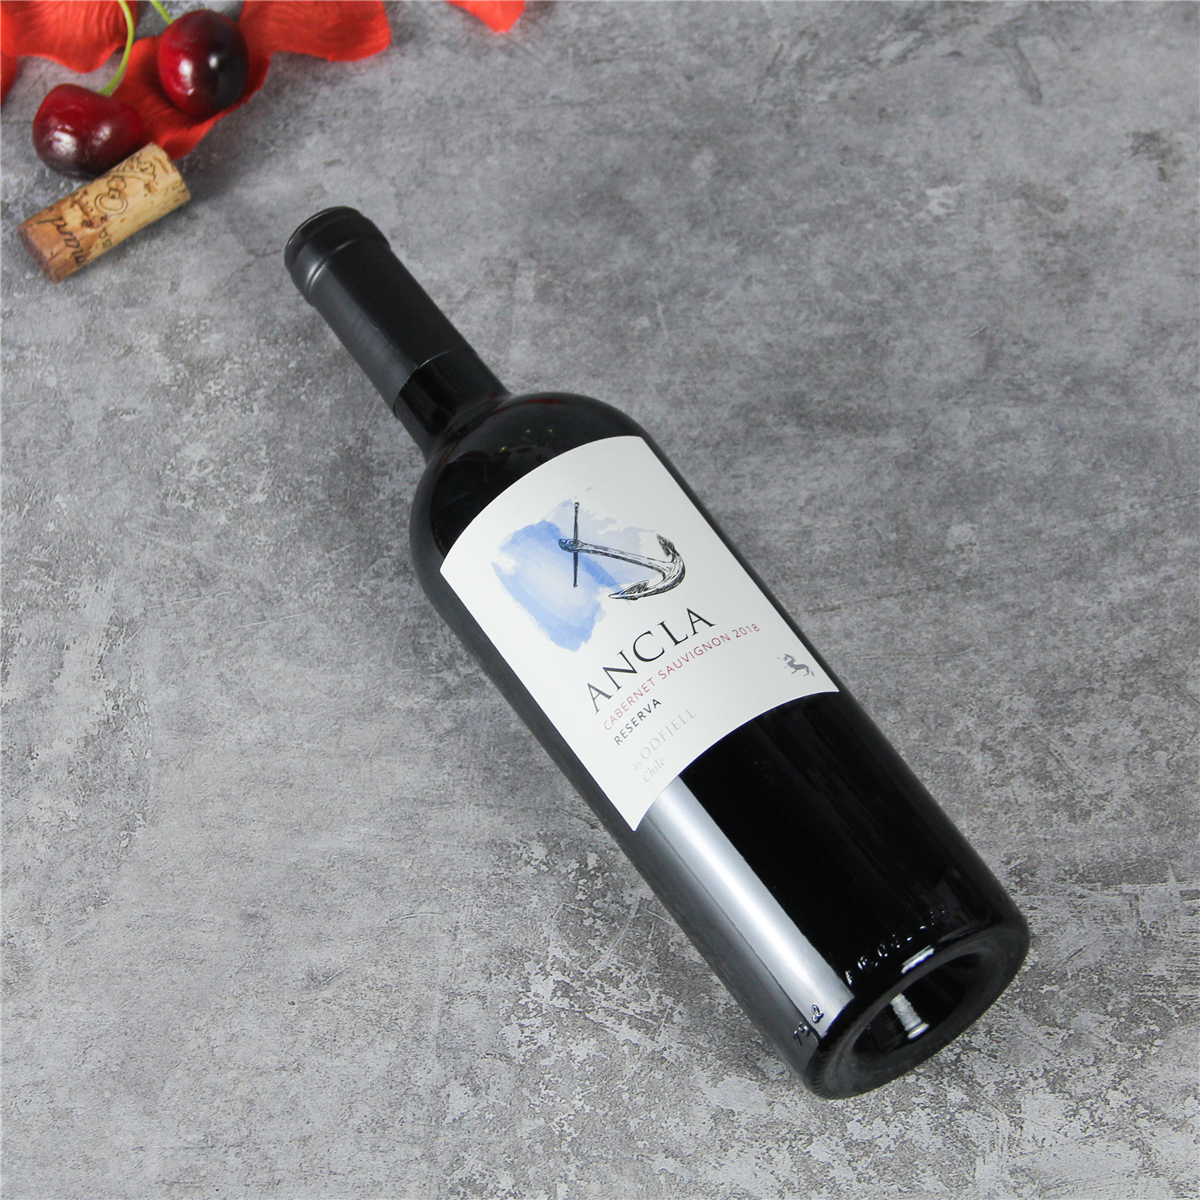 智利中央山谷安可拉珍藏赤霞珠红葡萄酒红酒